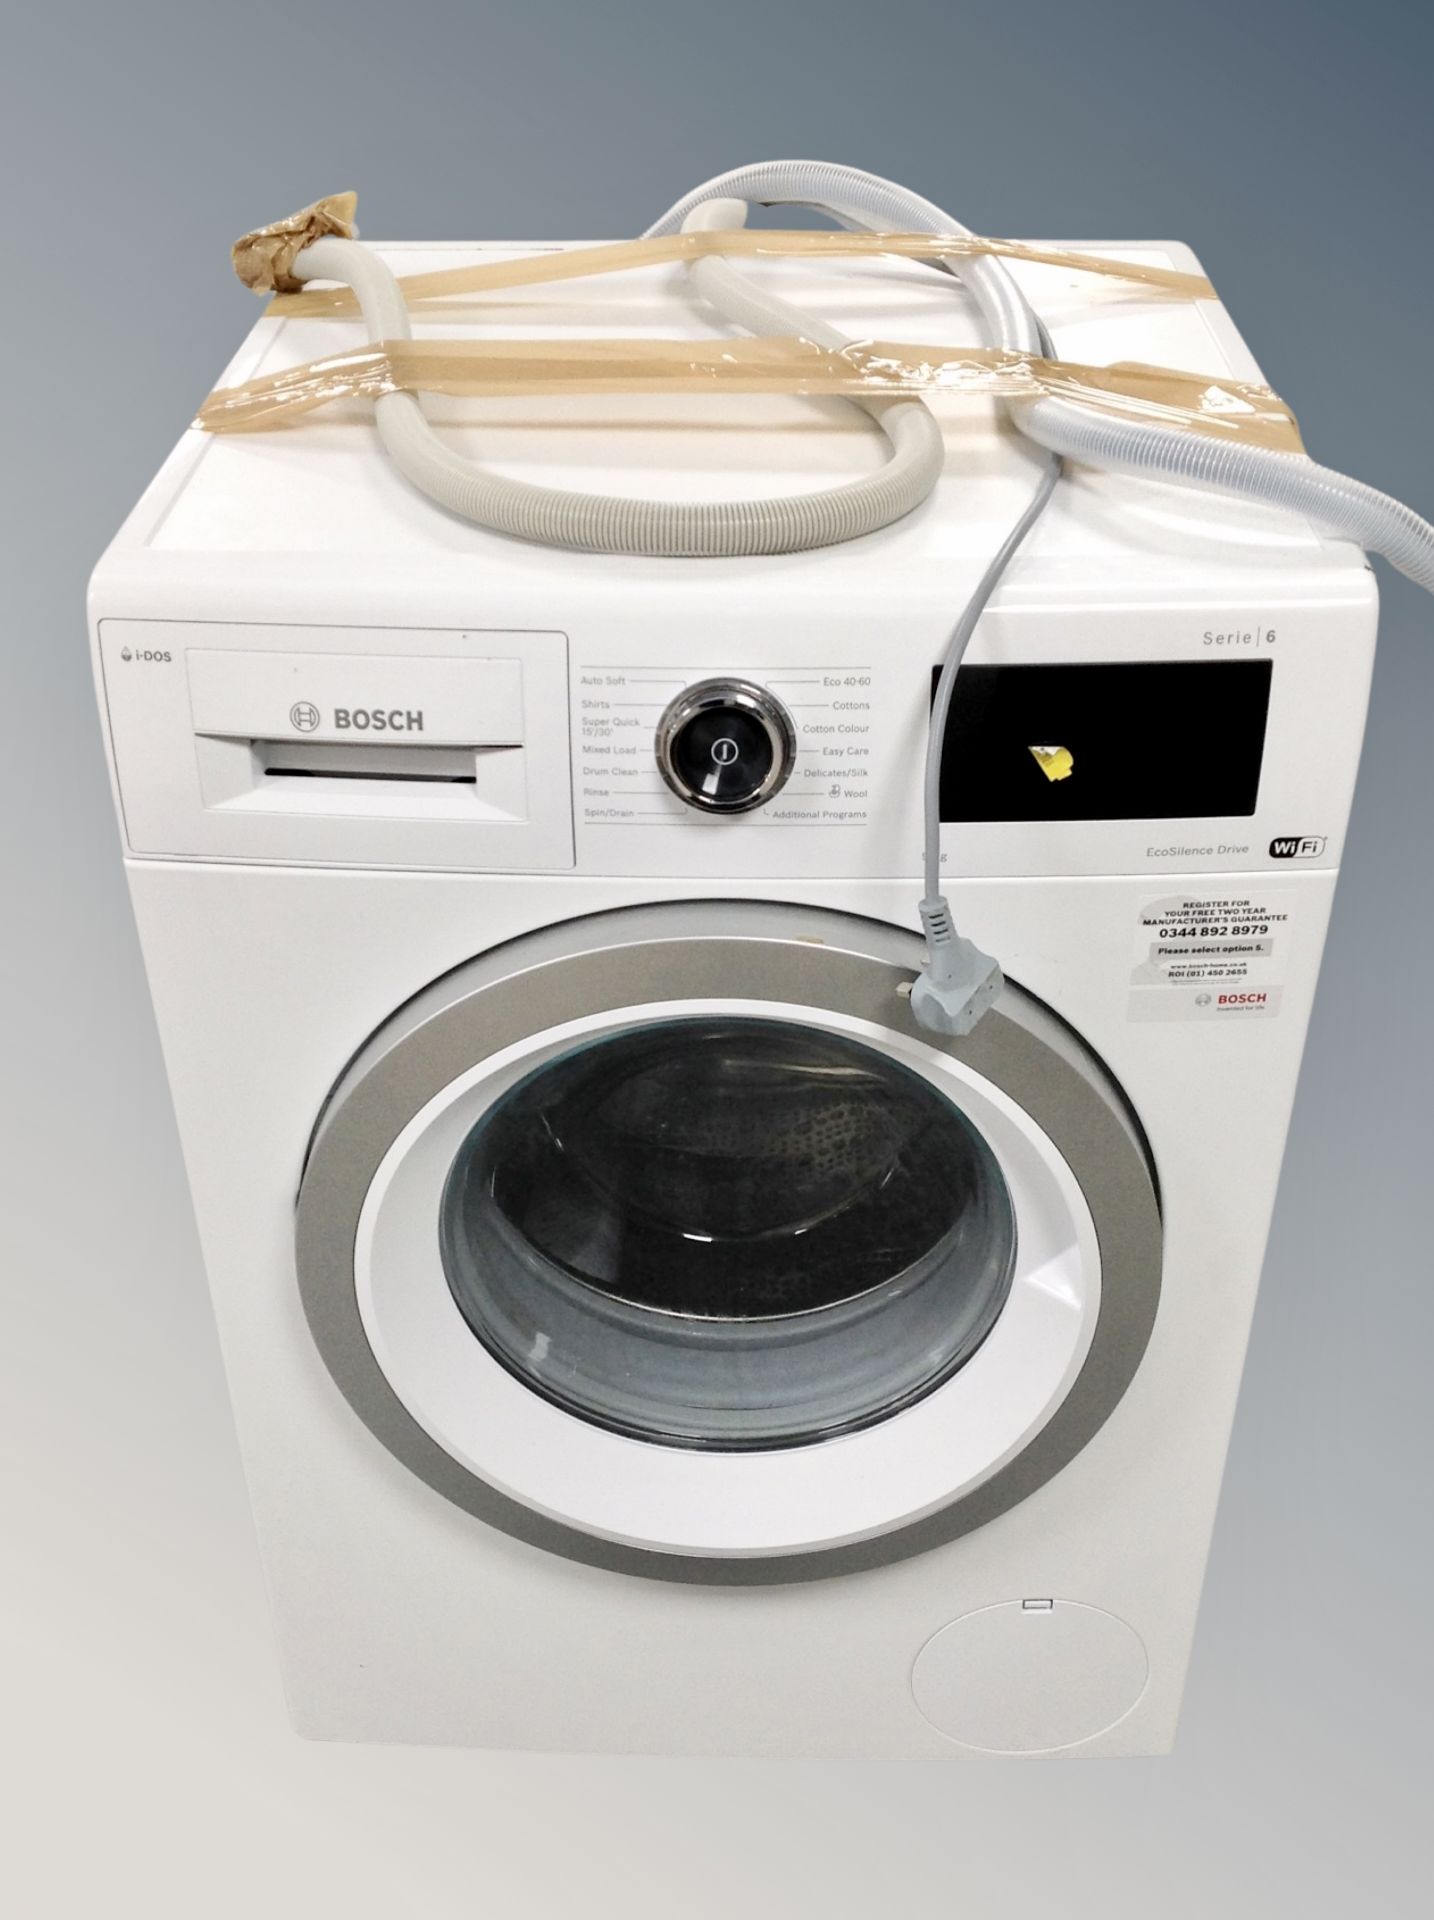 A Bosch Serie 6 washing machine